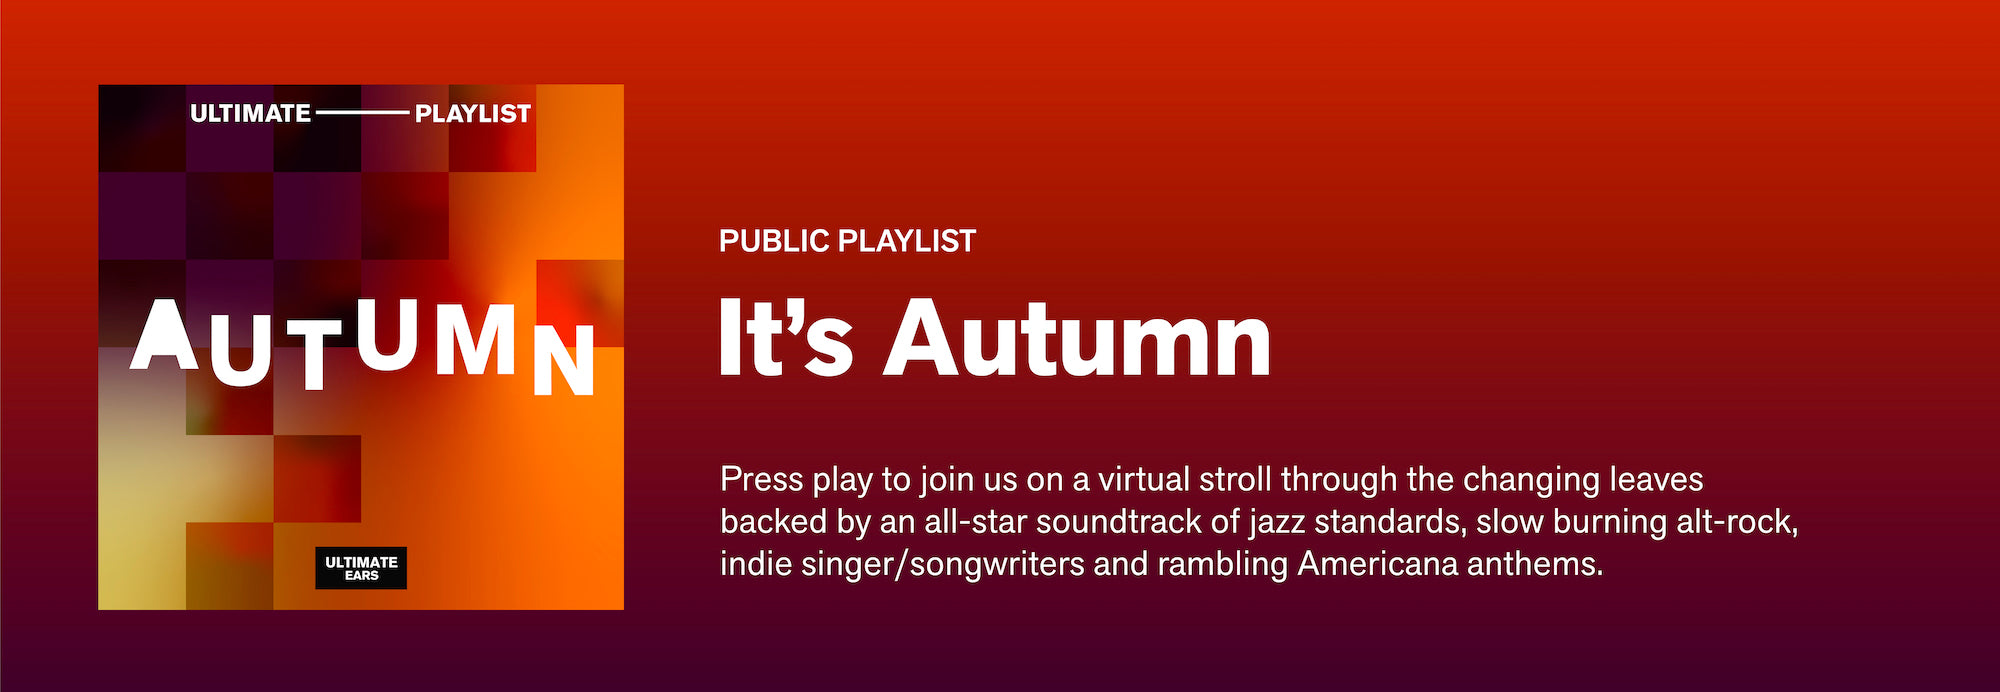 Playlist: It’s Autumn